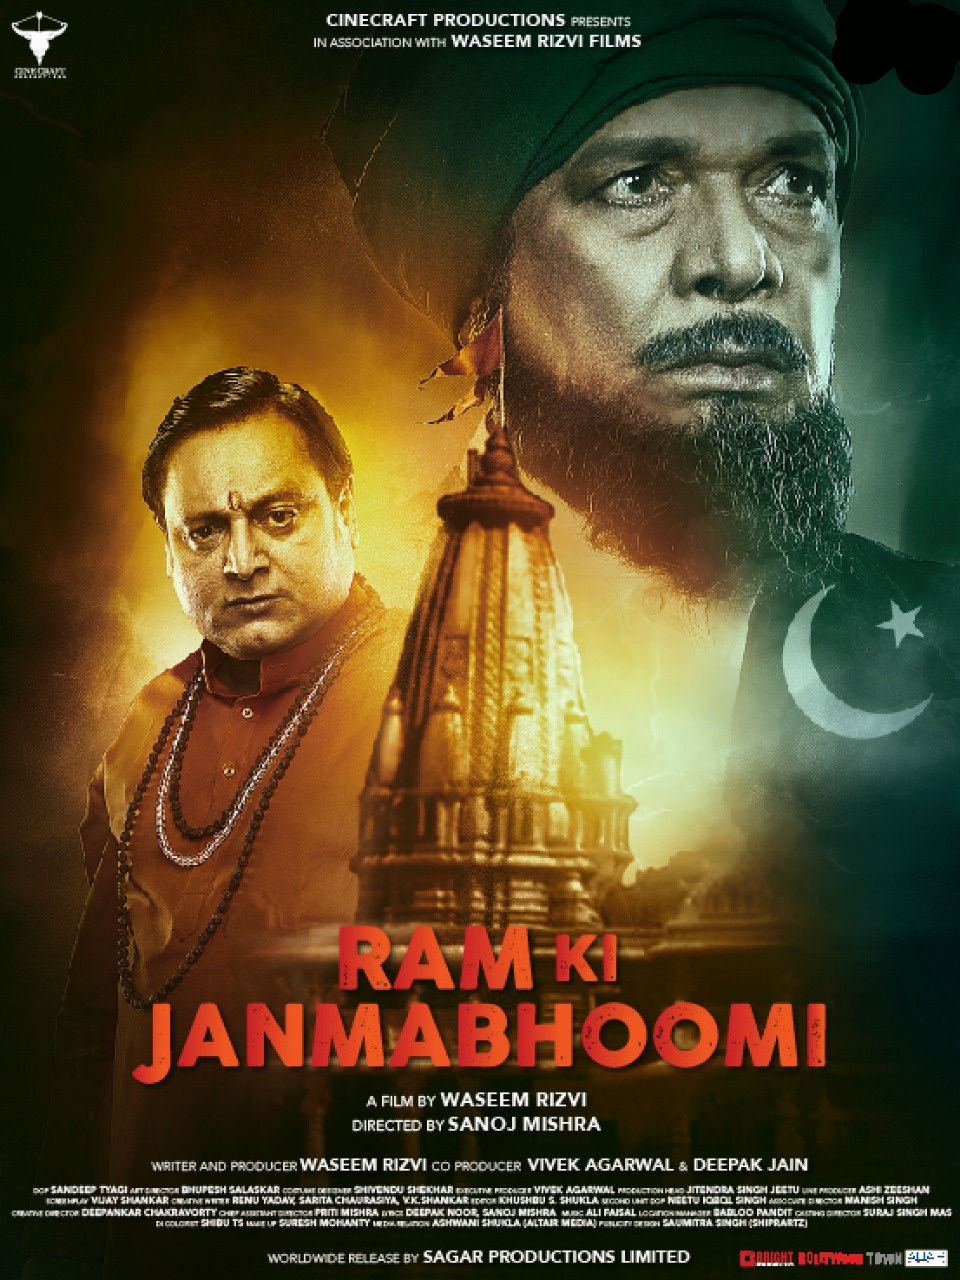 वसीम रिजवी की फिल्म राम जन्मभूमि को मिला सेंसर बोर्ड का सर्टिफिकेट. शिया वक़्फ़ बोर्ड के चेयरमैन हैं वसीम रिज़वी. 29 मार्च, 2019 को ऑल इंडिया रिलीज़ के लिए तैयार